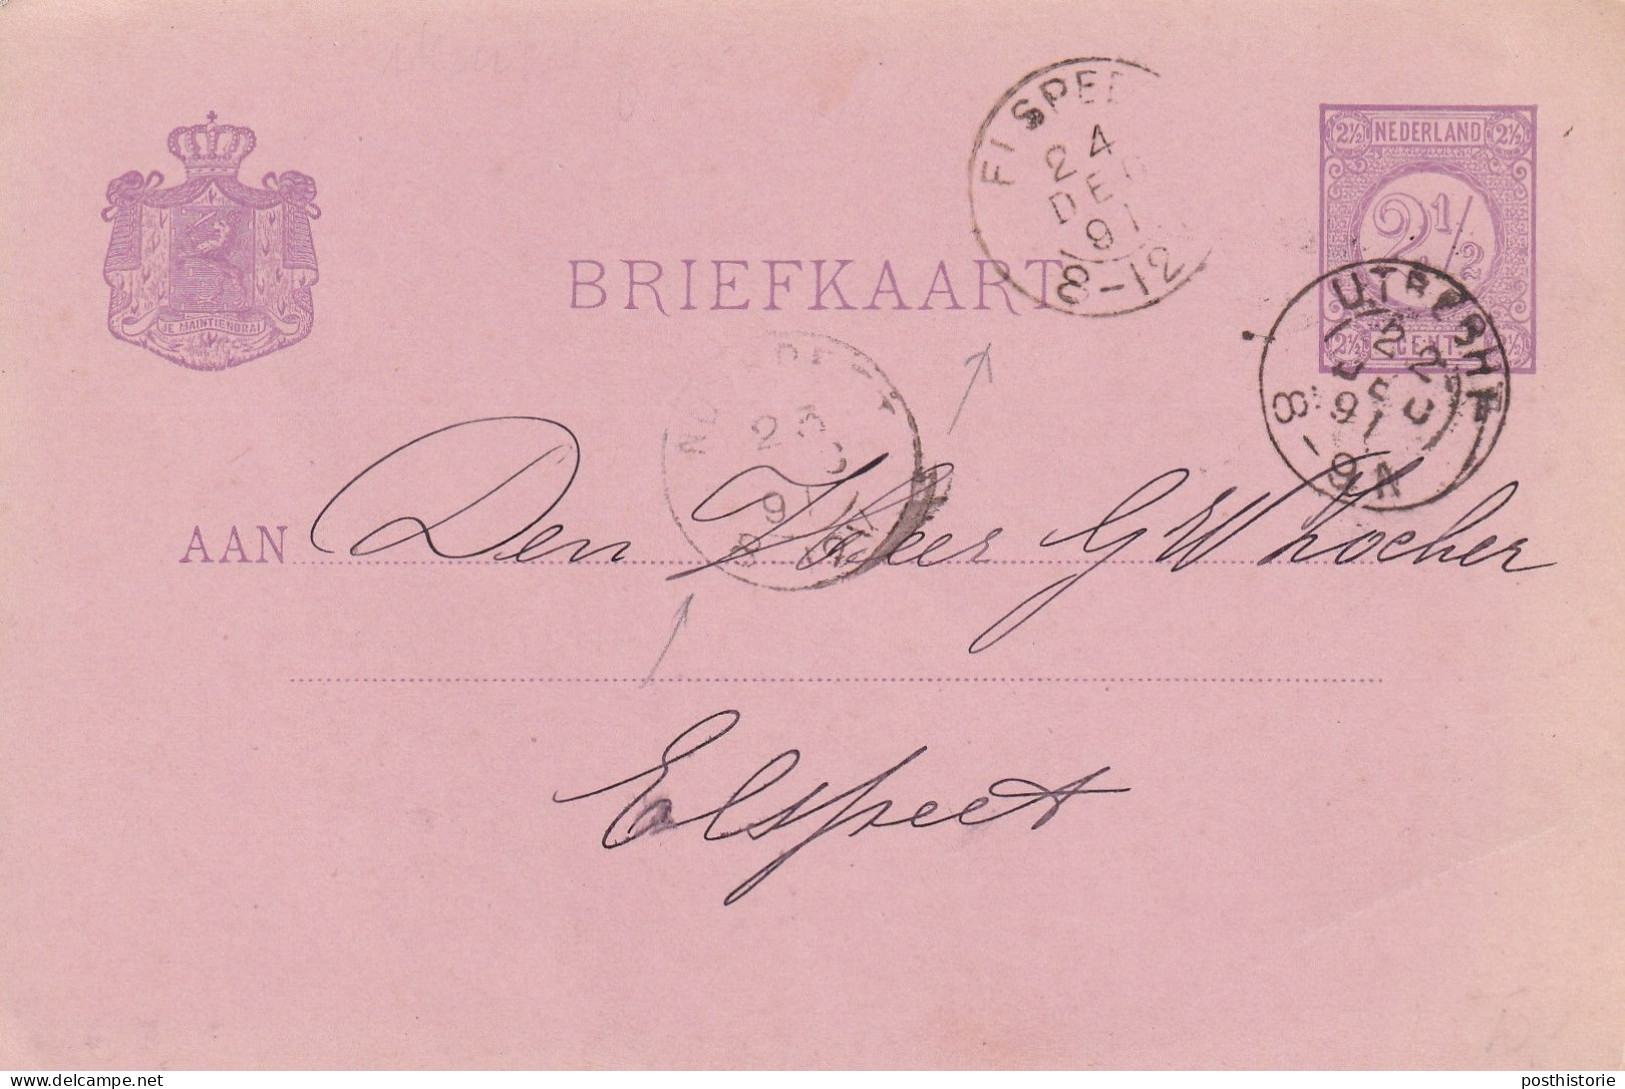 Briefkaart 22 Deec 1891 Utrecht Via Nunsoeet Enaar Elkspeetl (hulpkantor Kleinrond) - Marcophilie